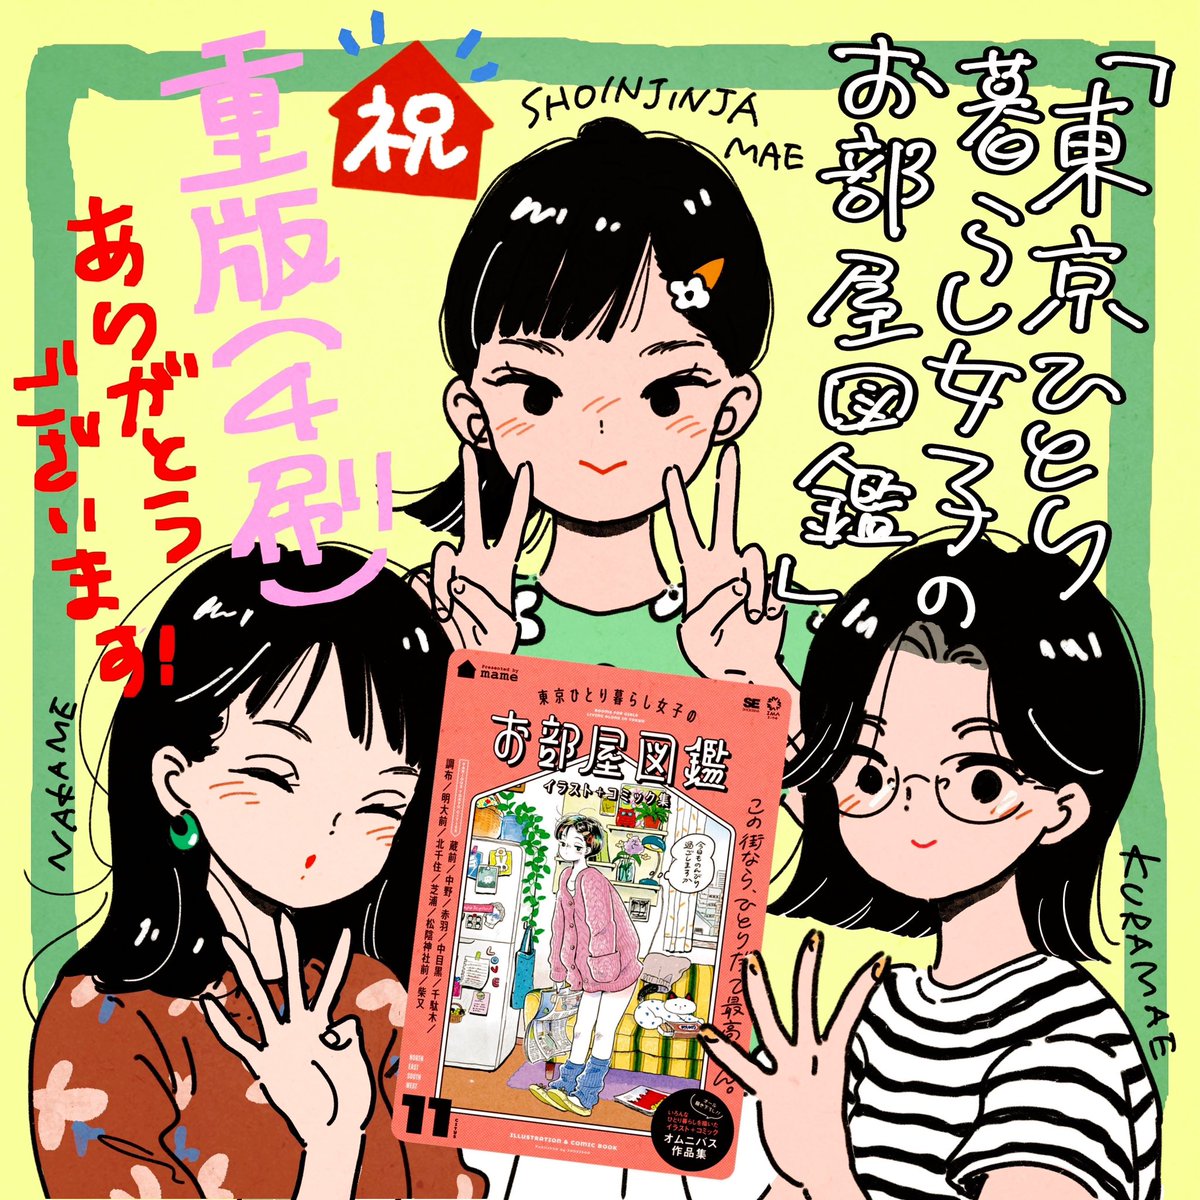 ㊗️『東京ひとり暮らし女子のお部屋図鑑』の重版が決まりました🎉4刷です✌️✌️
ご購入いただいた皆様、本当にありがとうございます!まだ読んでないよって方はぜひお手に取っていただけたら嬉しいです!

https://t.co/BSU9A8l3C4 